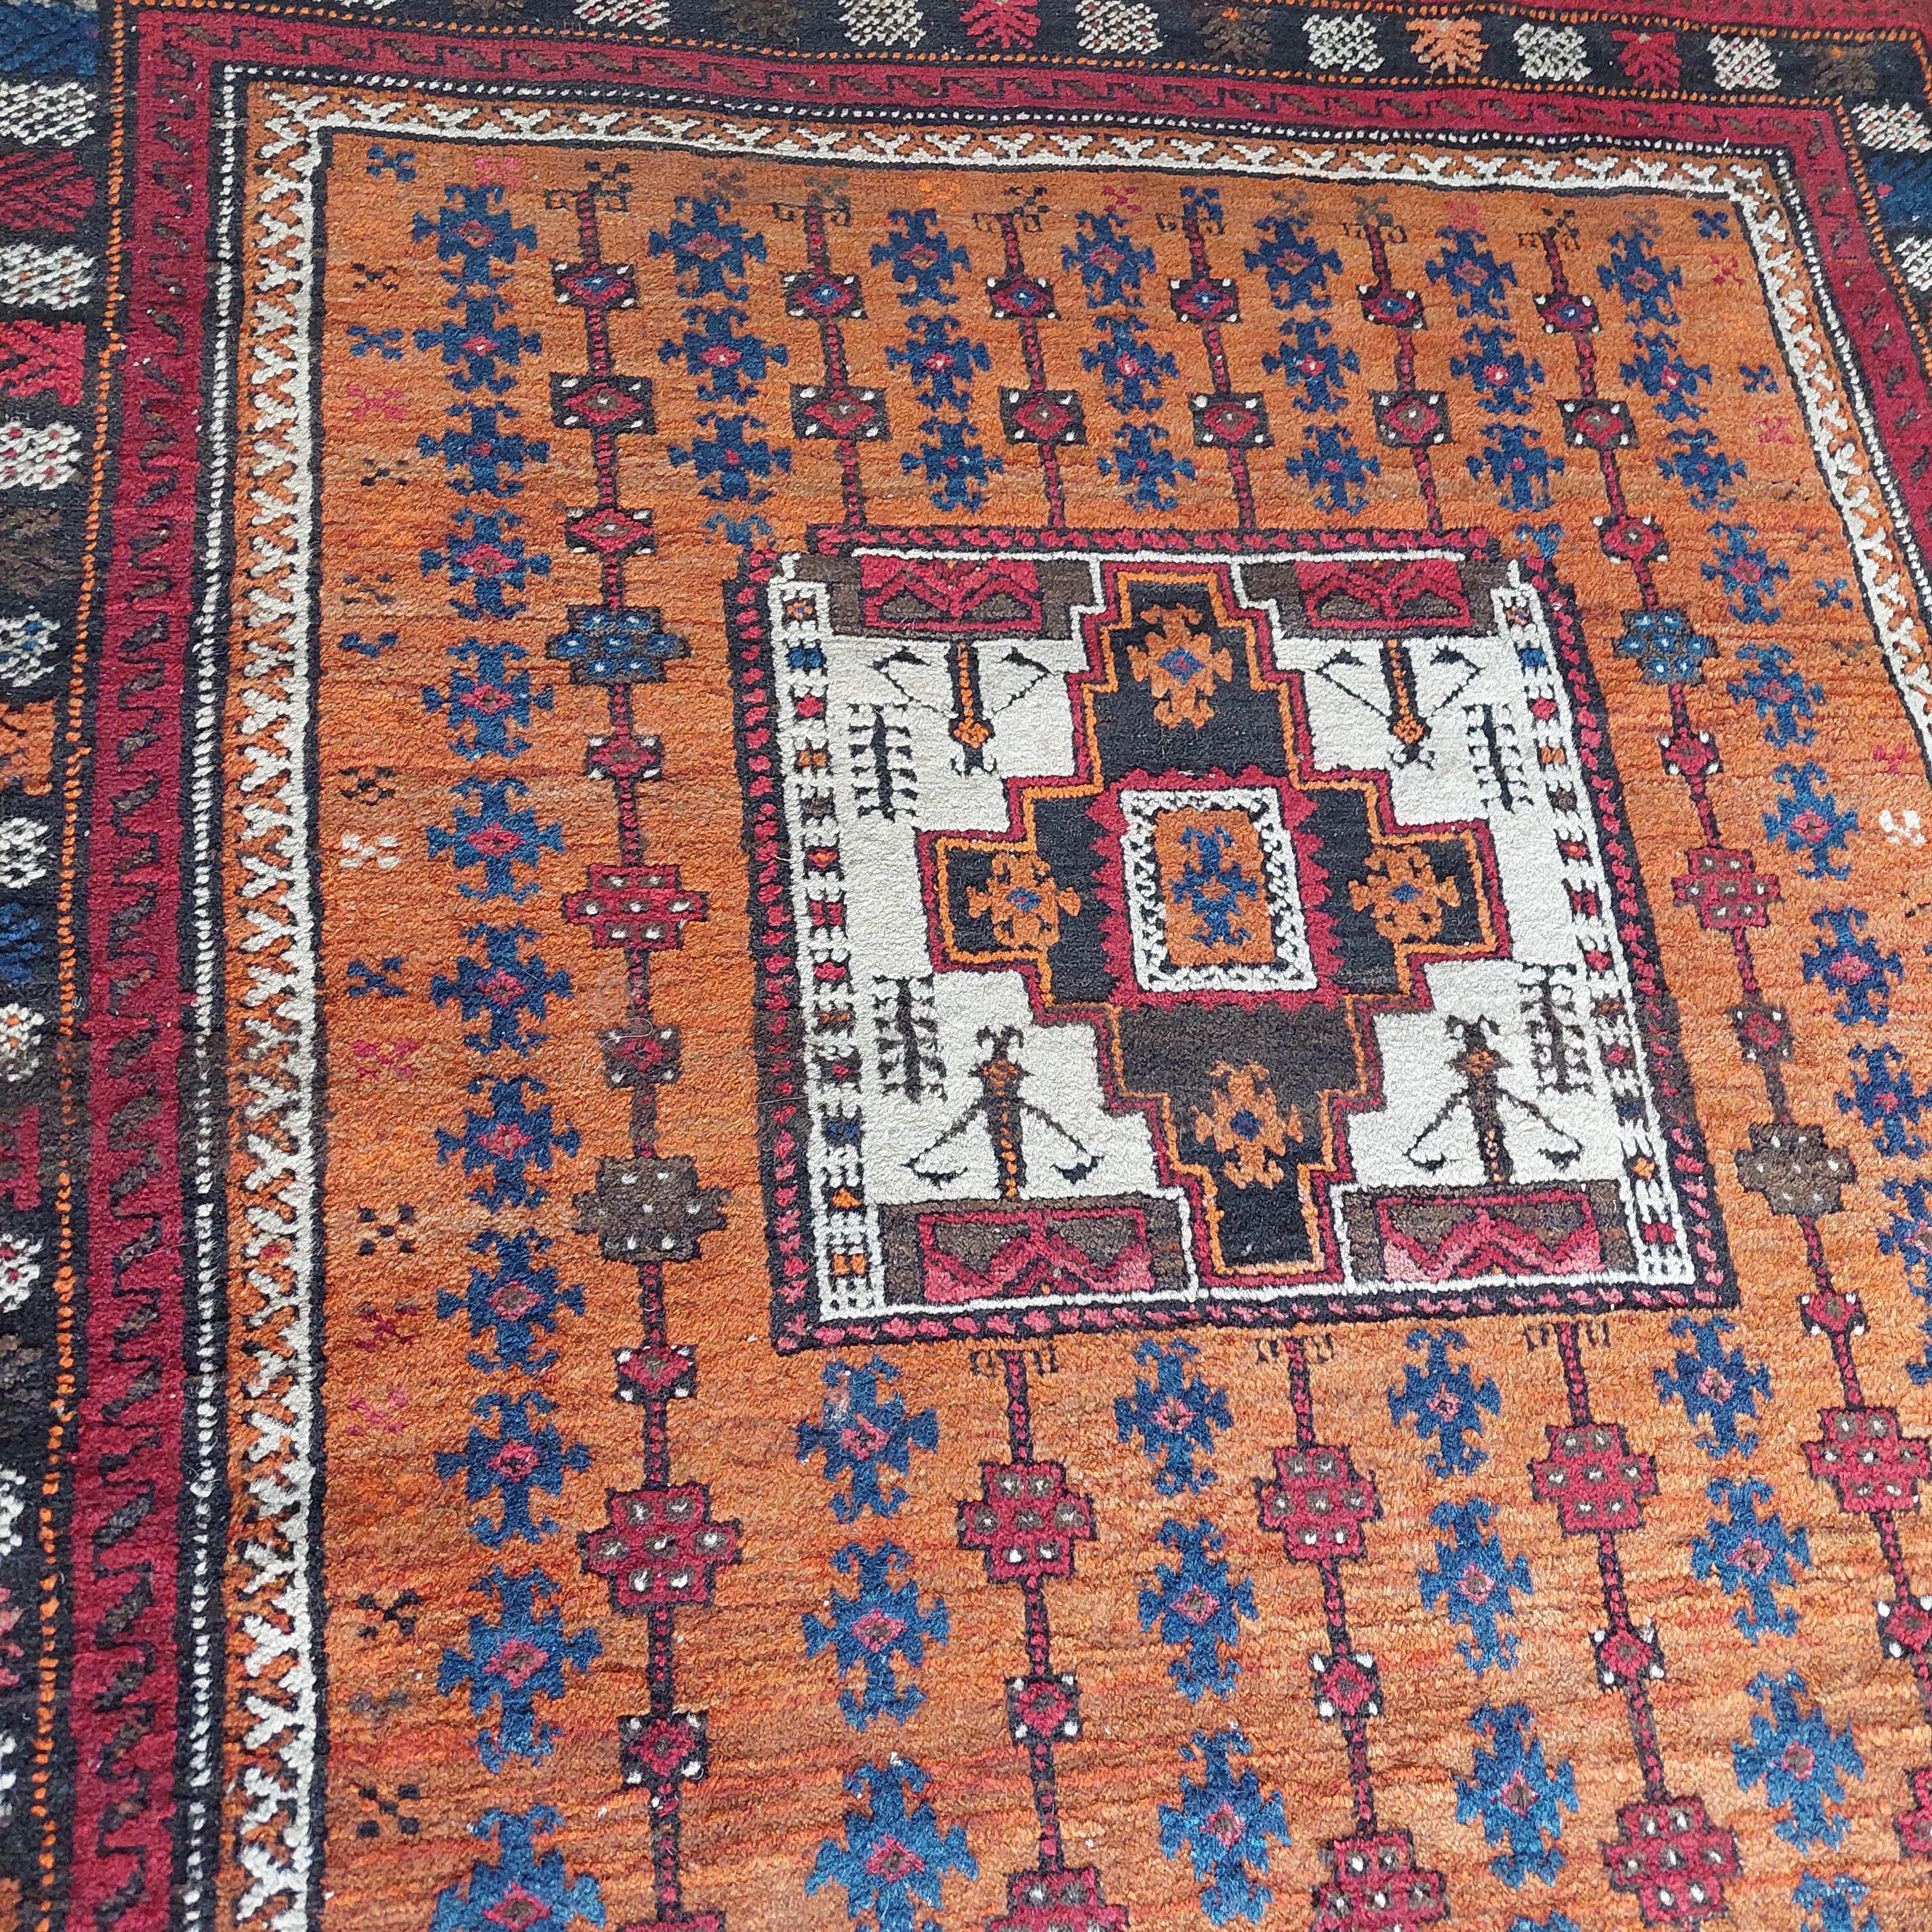 Hand-Woven antique Vintage kazak caucasian tribal rug 190x120cm